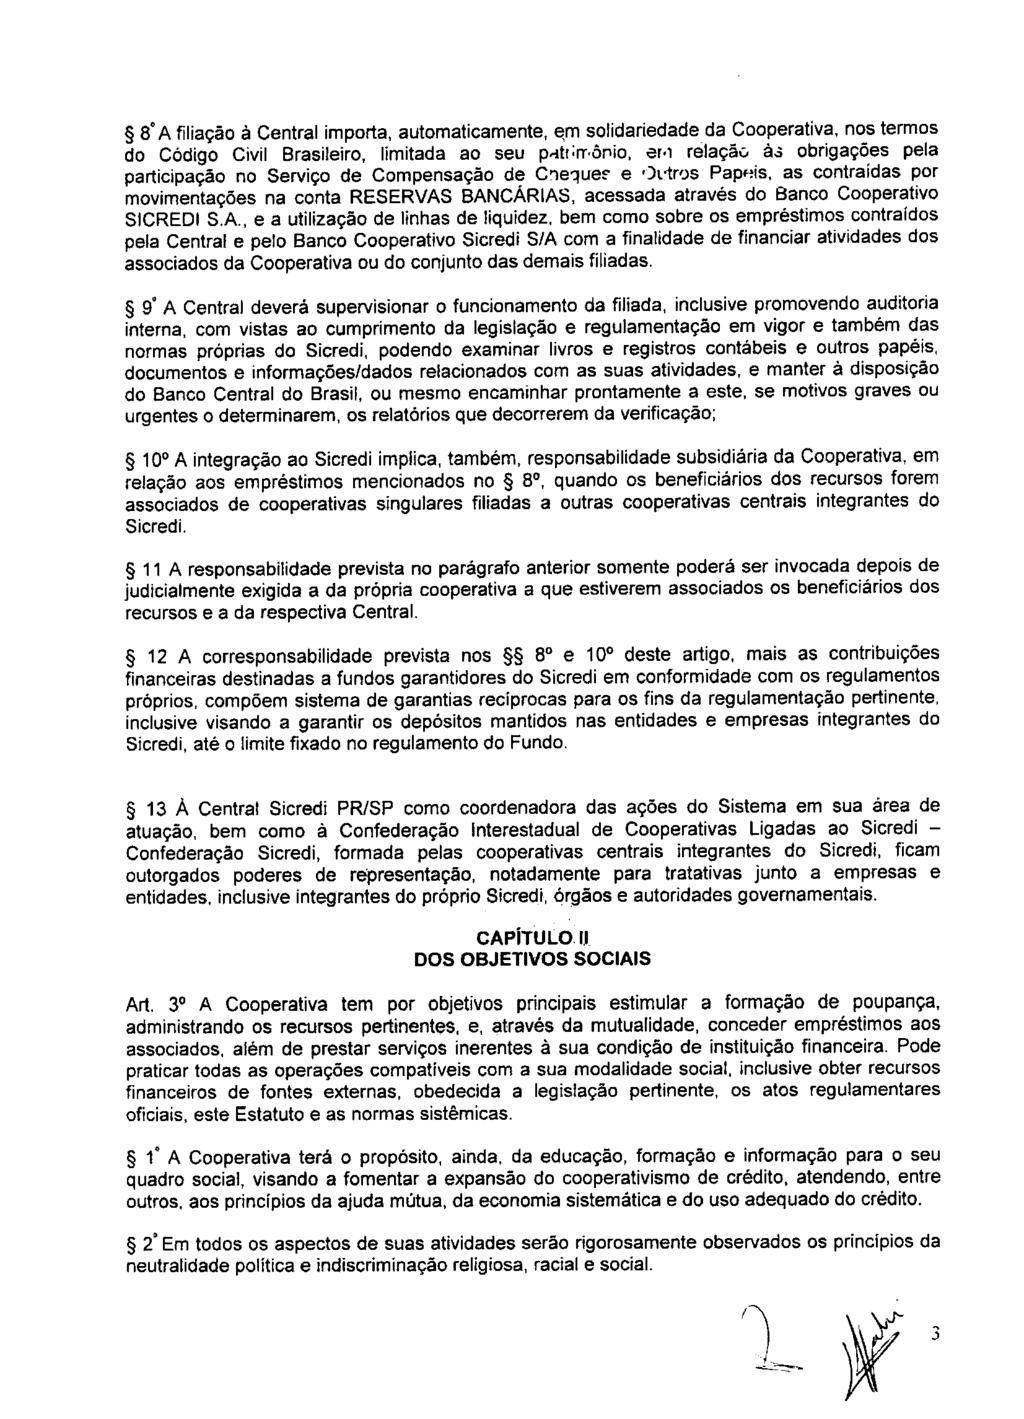 fls. 9 Este documento é cópia do original, assinado digitalmente por ANA ROSA MARQUES CROCE e Tribunal de Justica Sao Paulo, protocolado em 10/02/2016 às 15:37, sob o número